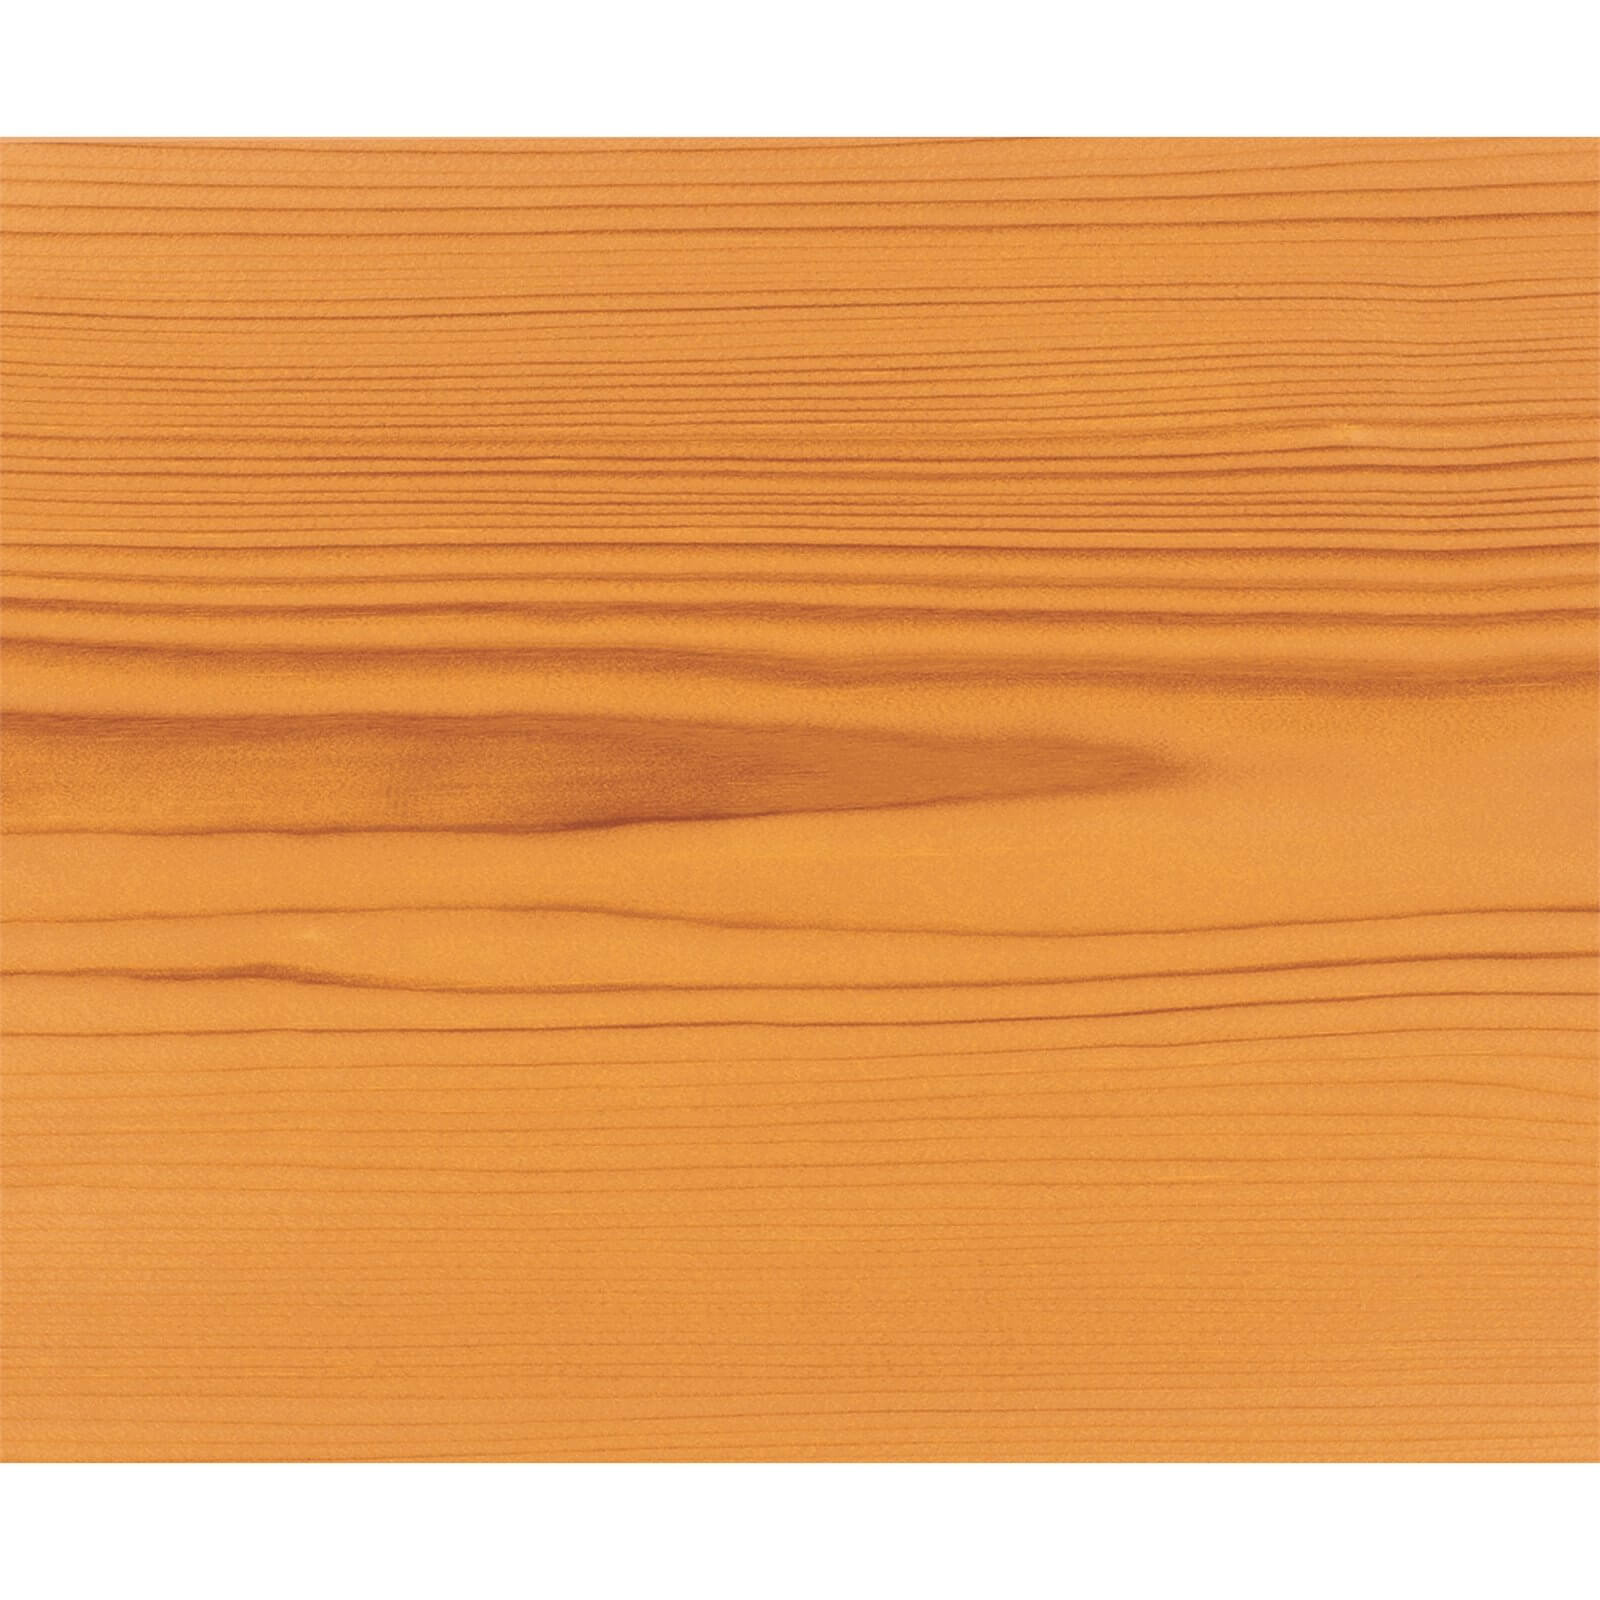 Ronseal Perfect Finish Interior Varnish - Medium Oak Satin 750ml